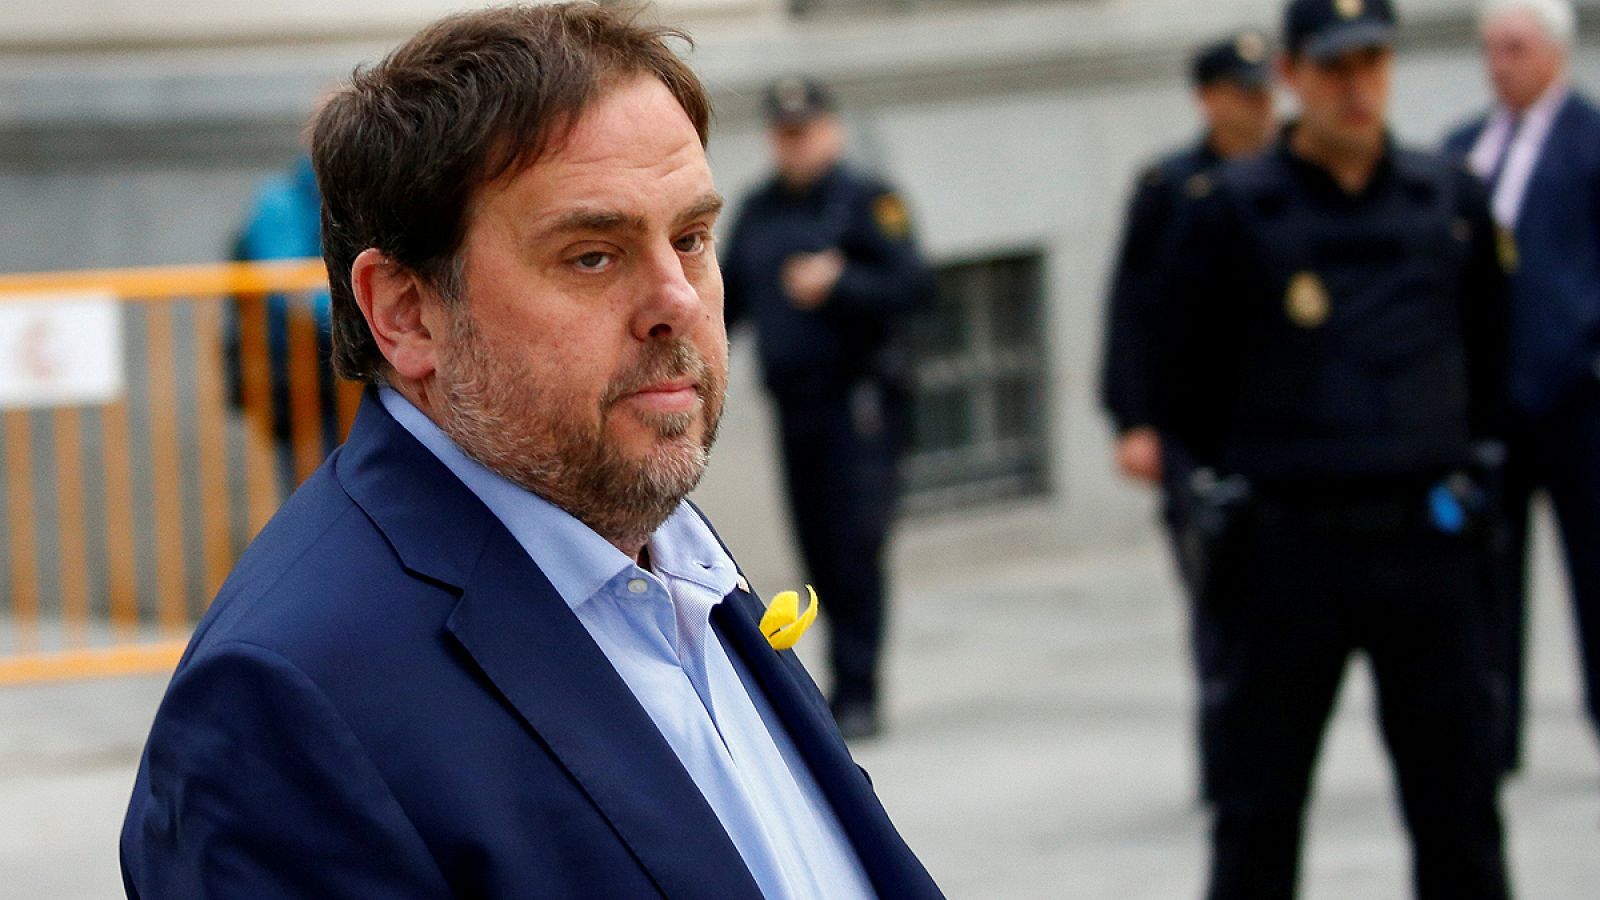 Oriol Junqueras está en prisión preventiva por su implicación en el sumario abierto por el procés hacia la declaración unilateral de independencia en Cataluña.